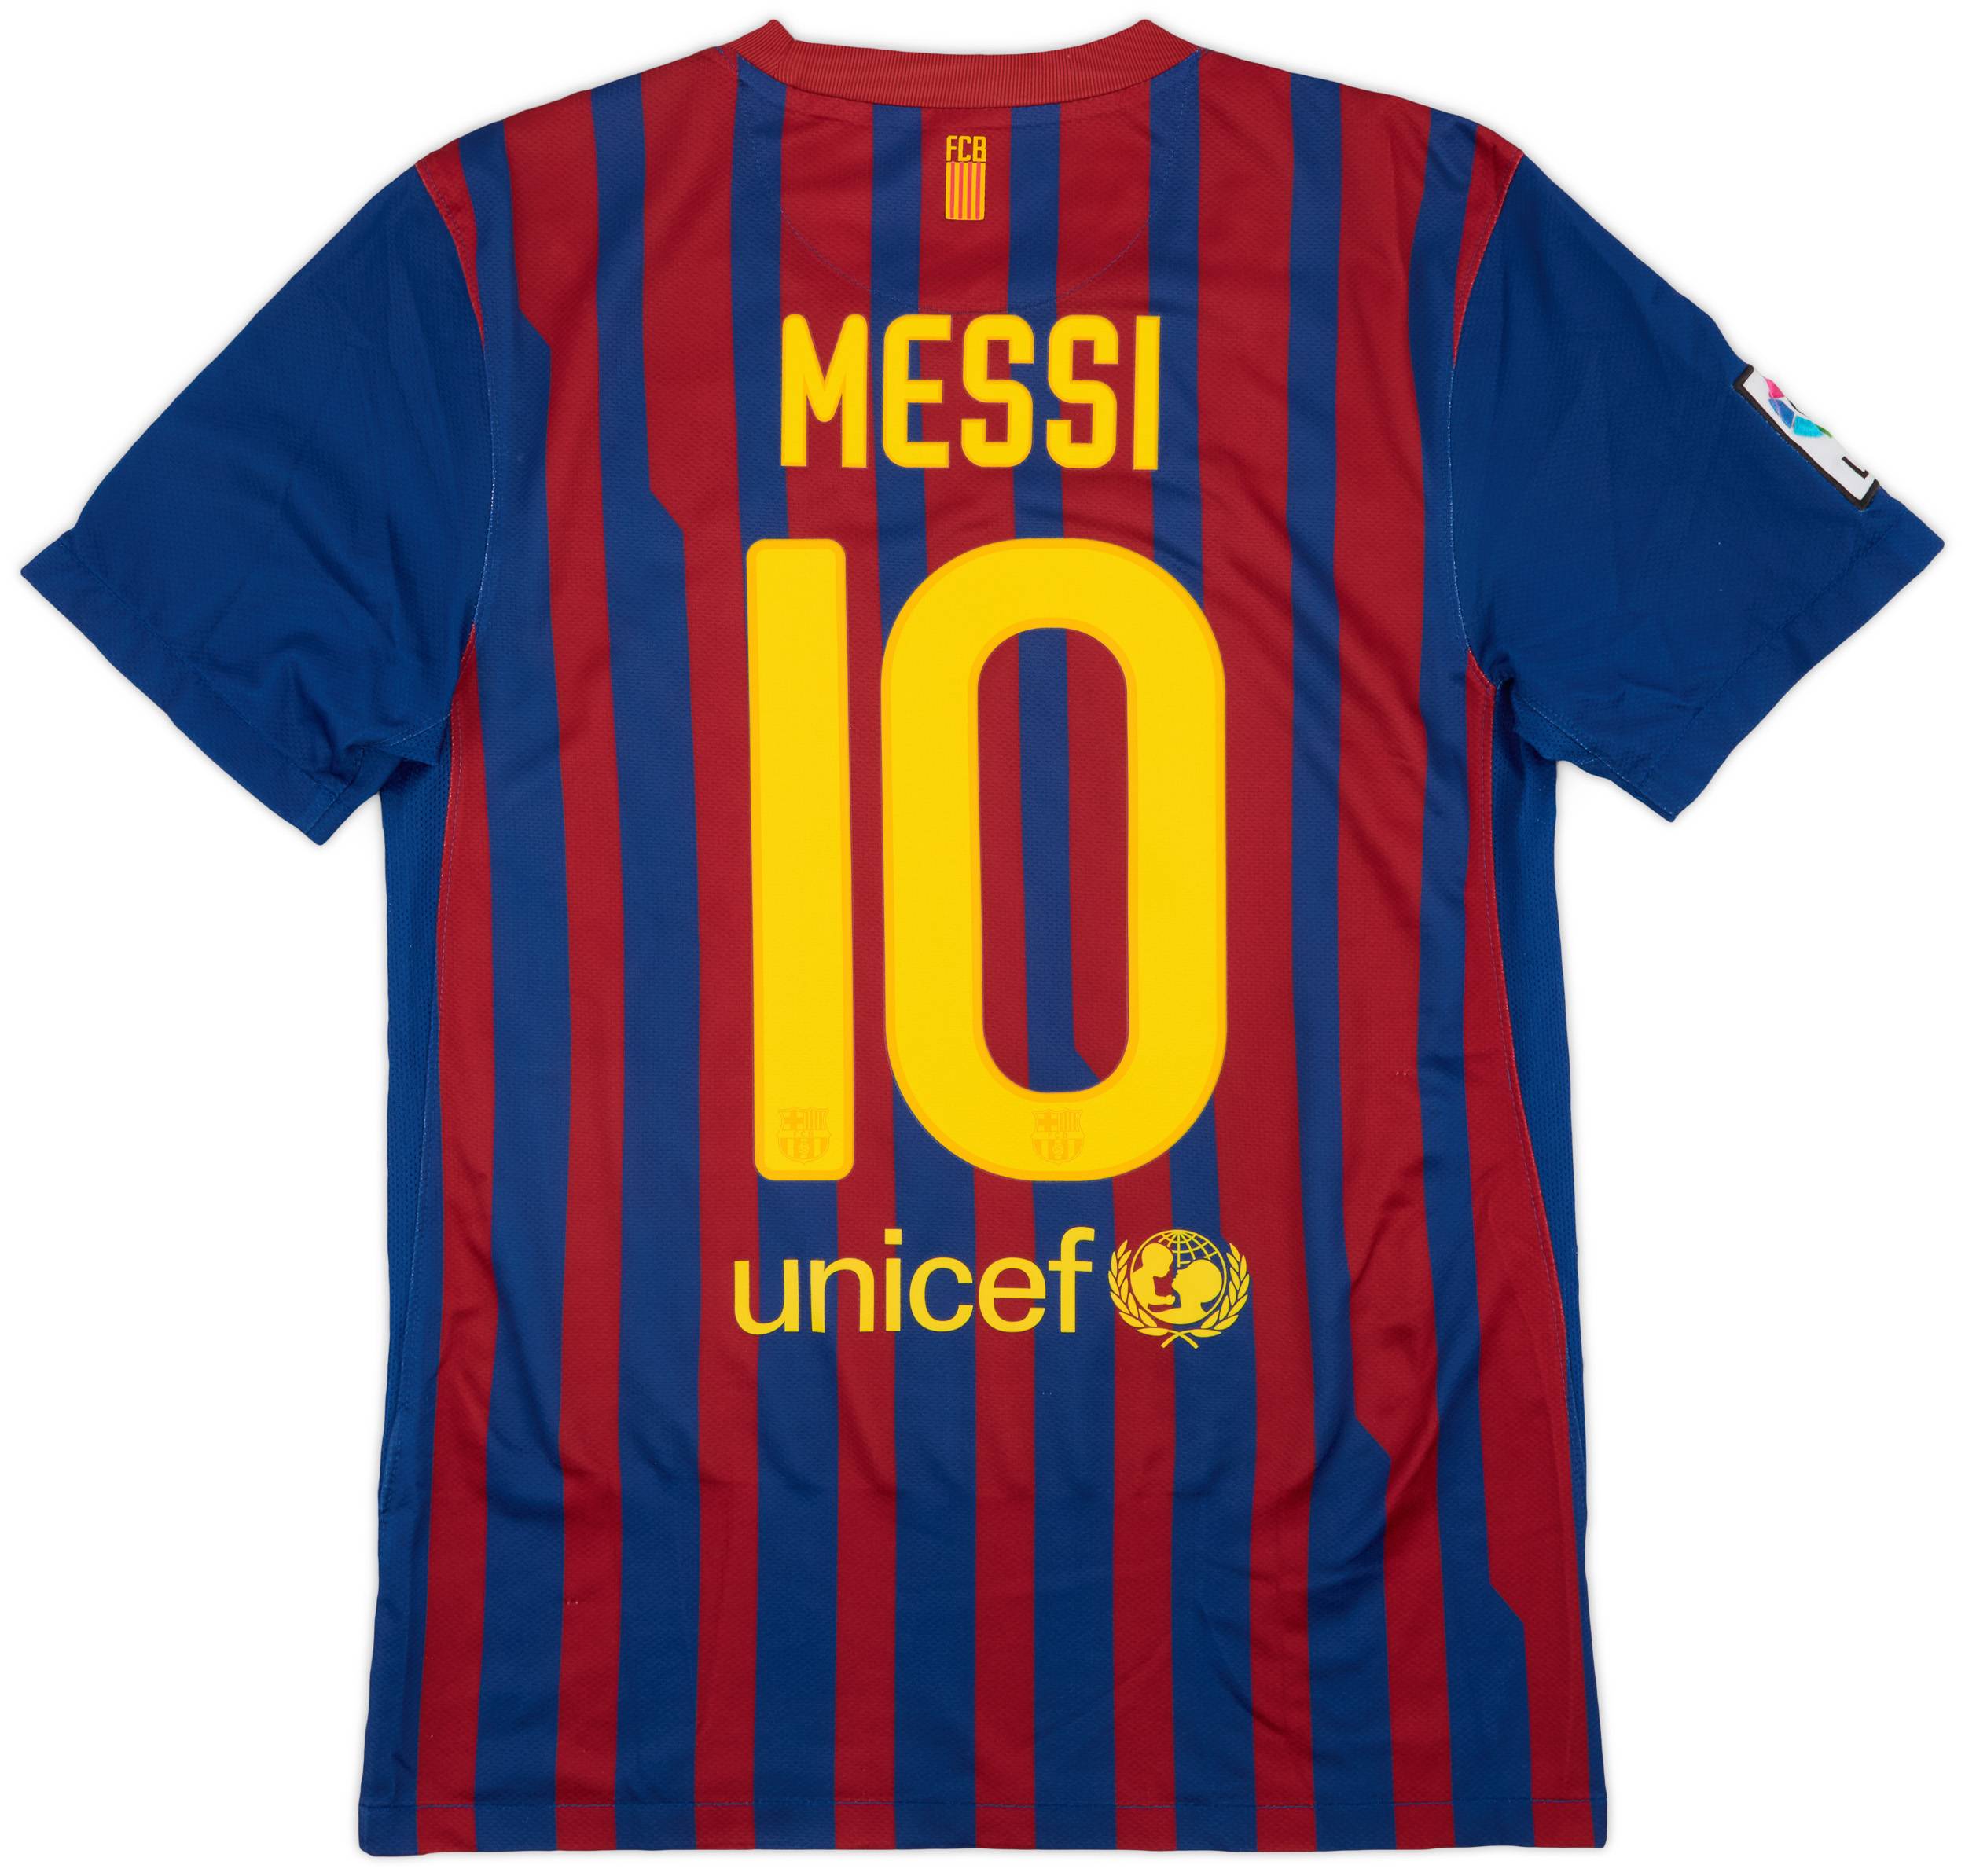 2011-12 Barcelona Home Shirt Messi #10 - 8/10 - (S)